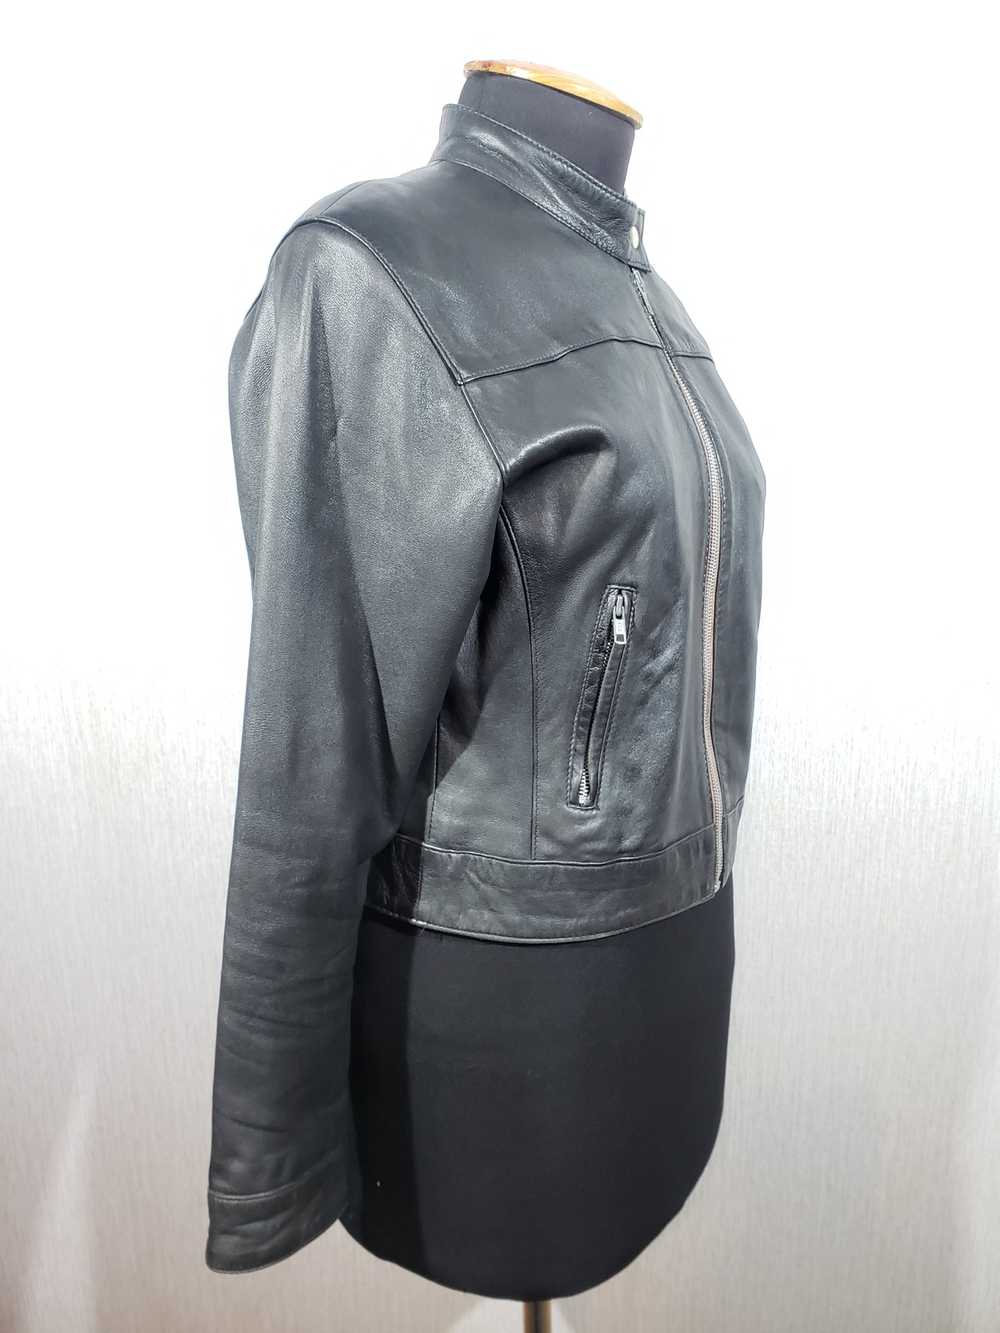 Designer × Leather Jacket Black women's sports ja… - image 4